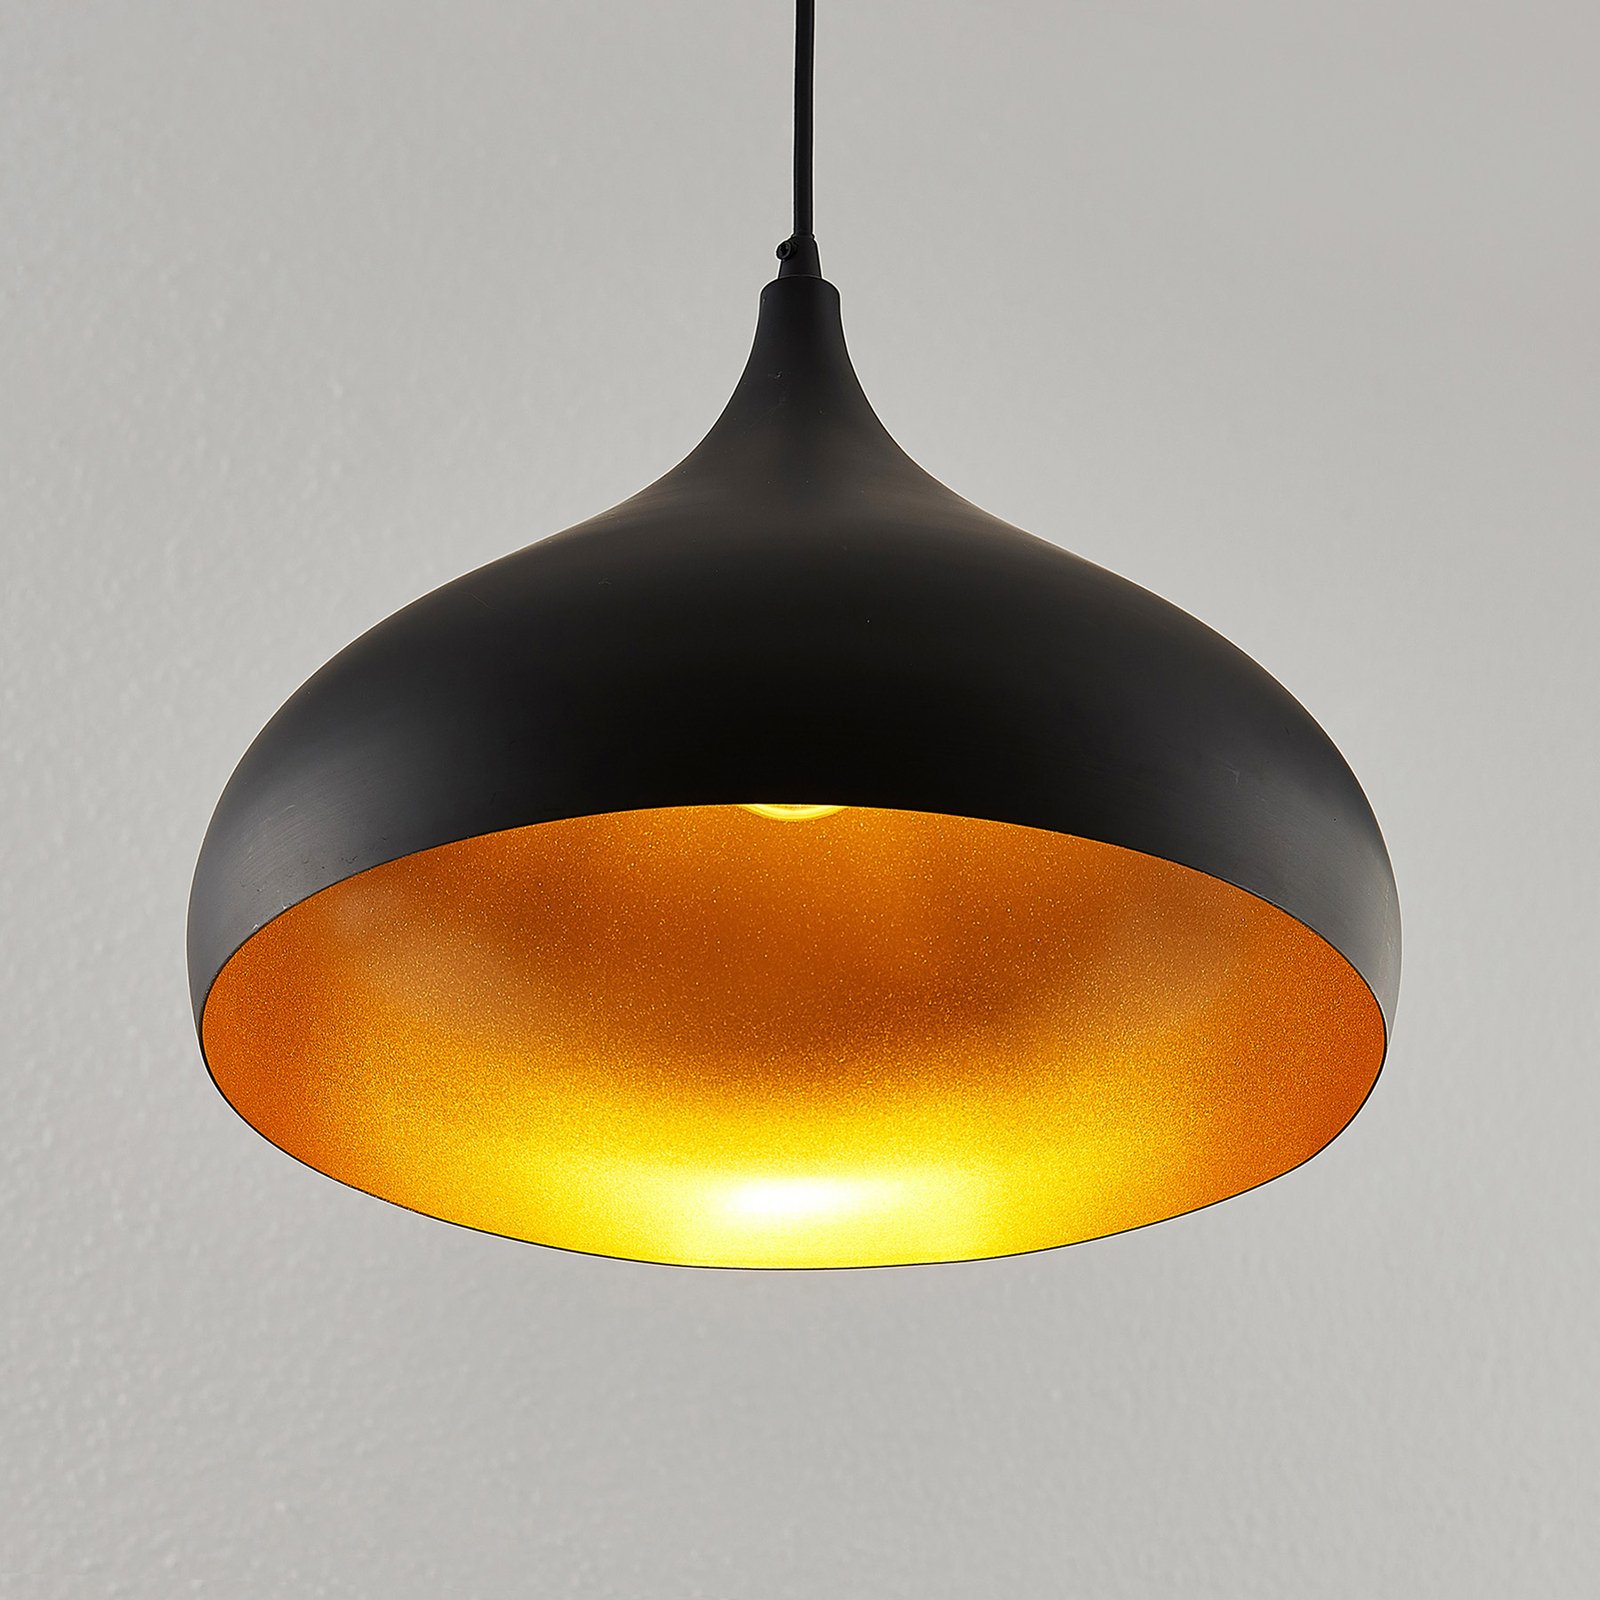 Lindby hanging light Ritana, black-gold, aluminium, set of 2